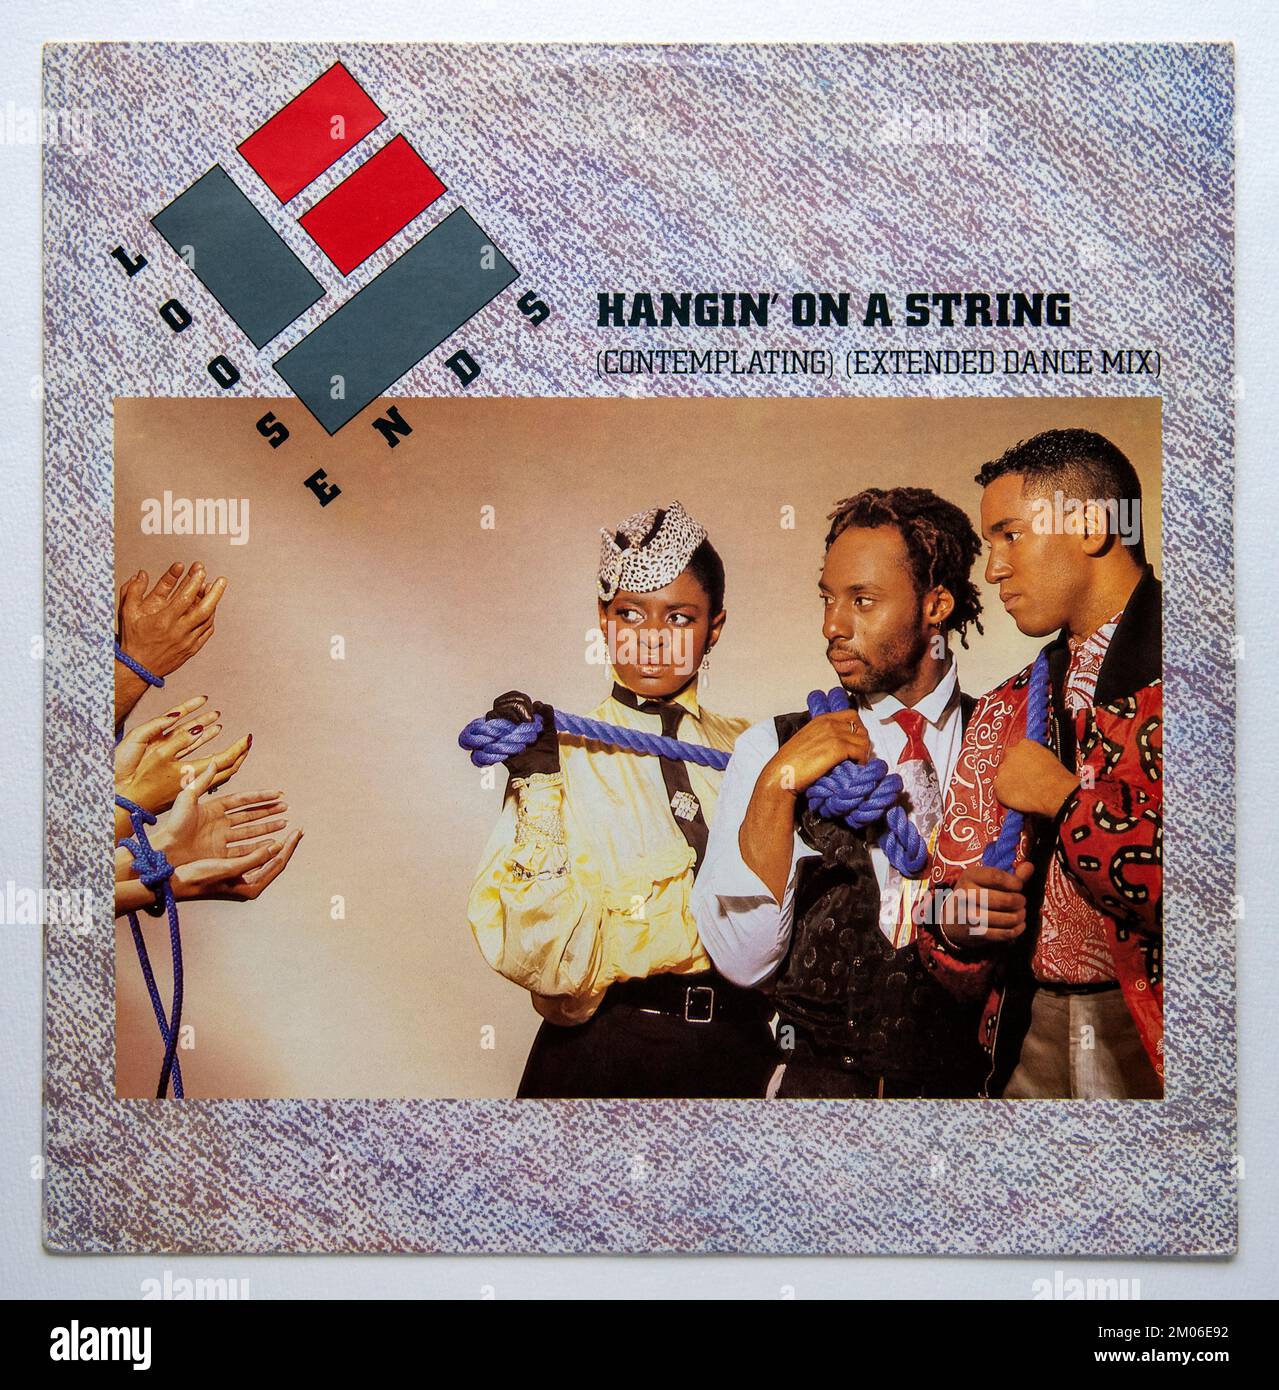 Bildabdeckung der 12 cm großen Einzelversion von Hangin' on a String by Lose Ends, die 1984 veröffentlicht wurde Stockfoto